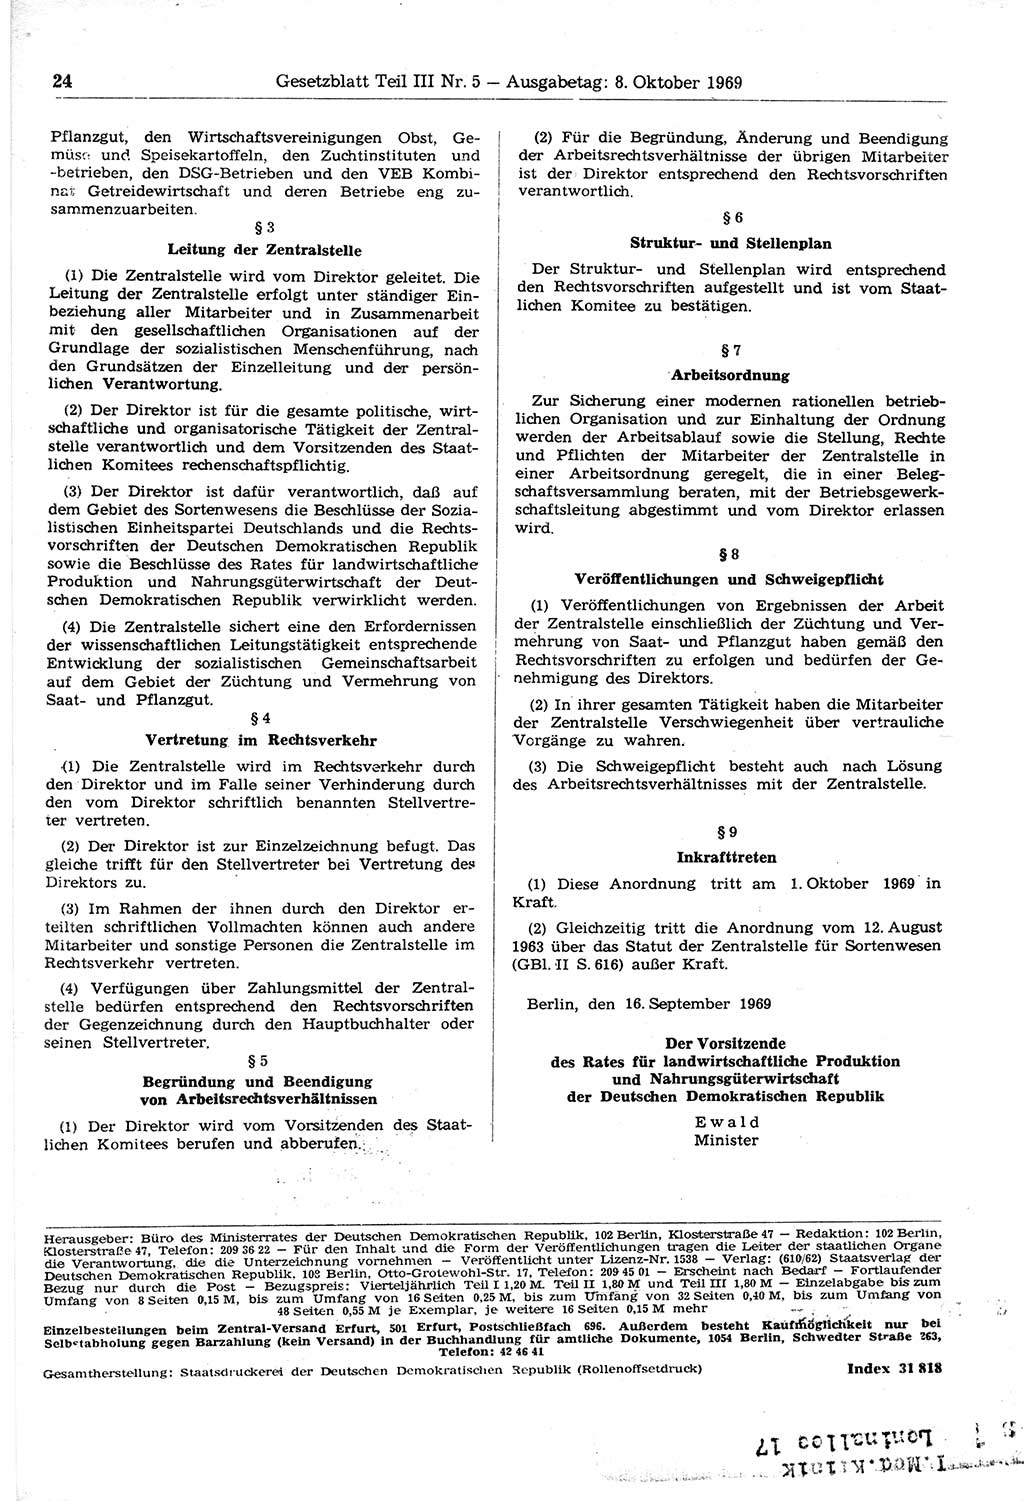 Gesetzblatt (GBl.) der Deutschen Demokratischen Republik (DDR) Teil ⅠⅠⅠ 1969, Seite 24 (GBl. DDR ⅠⅠⅠ 1969, S. 24)